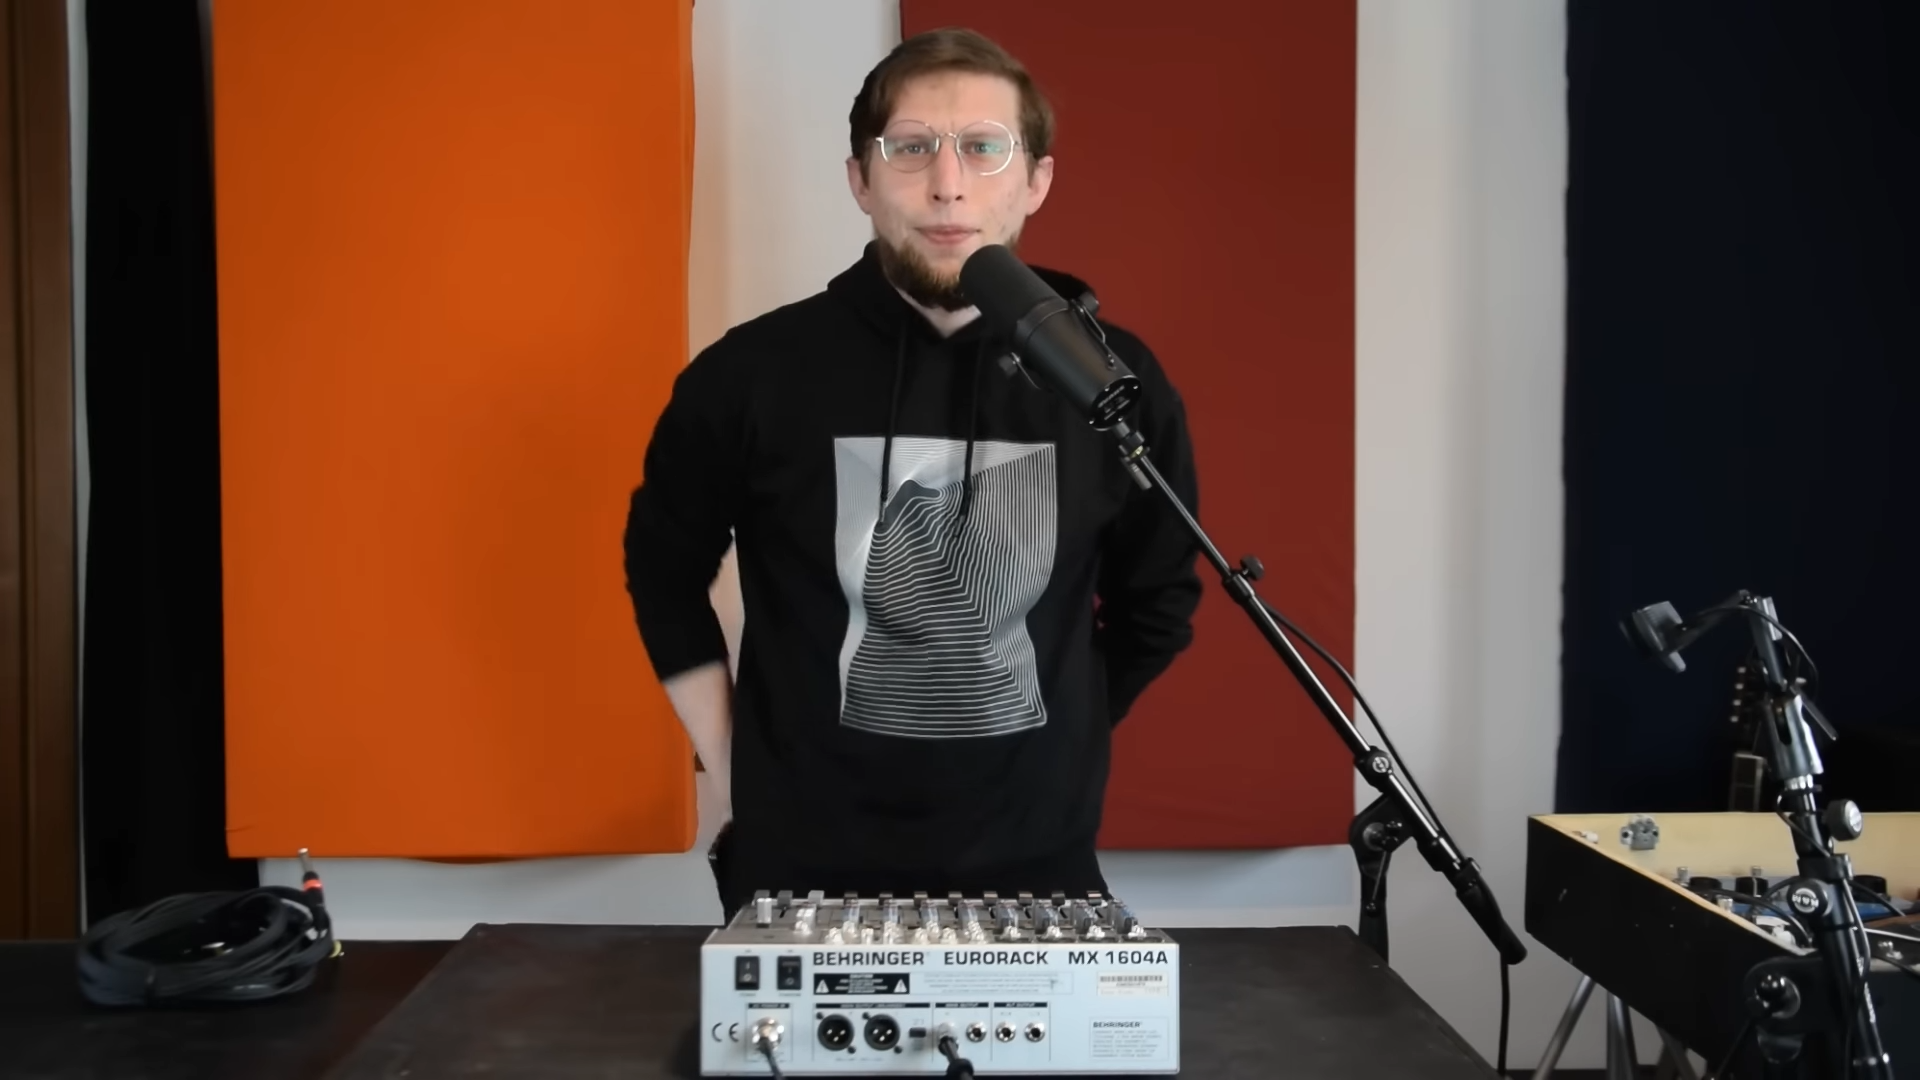 Du kan bruge en crappy mixer som en pæn synthesizer